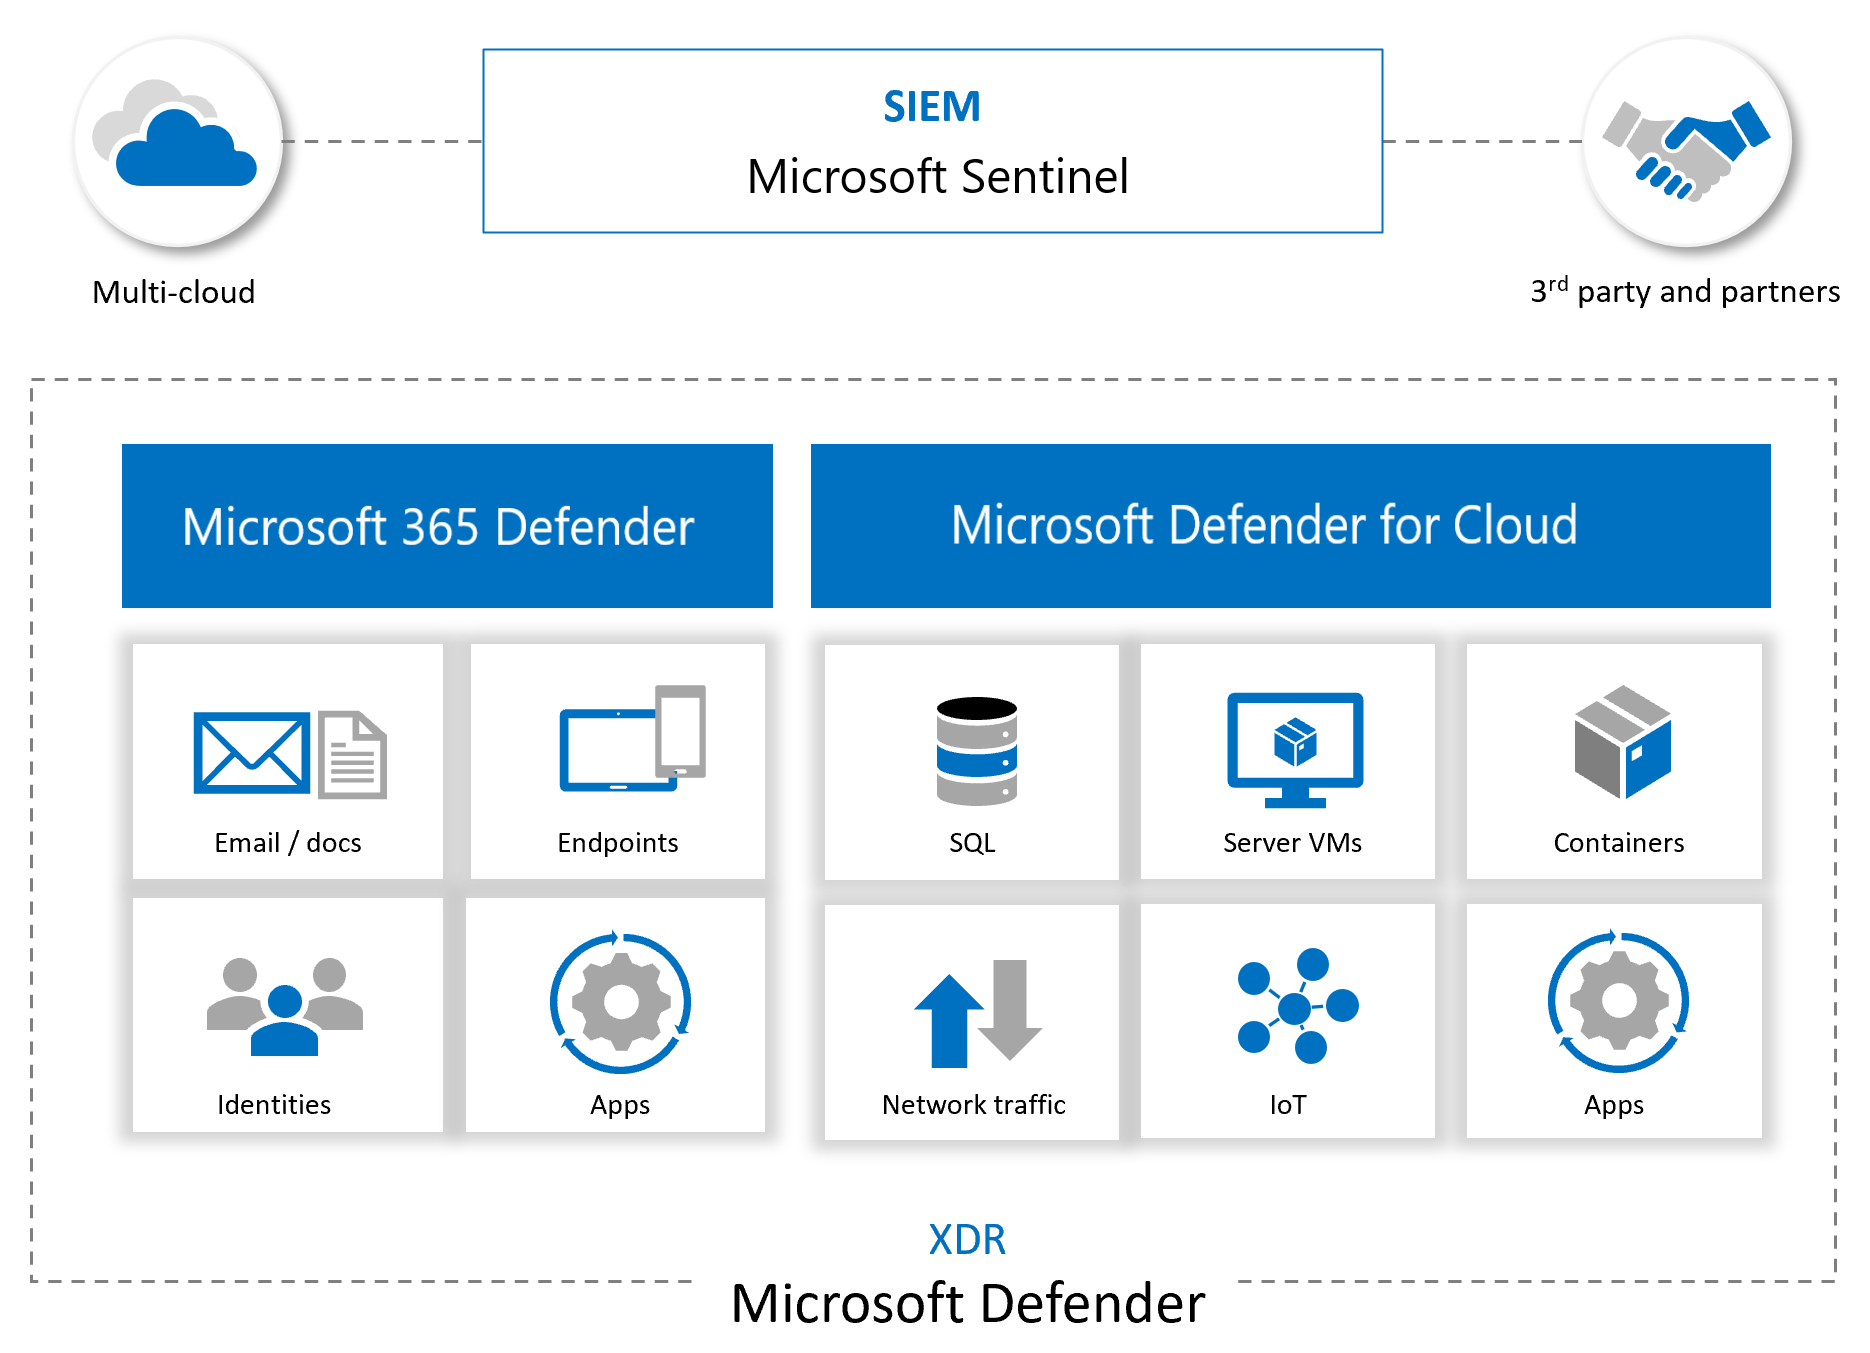 Microsoft Azure Sentinel berintegrasi dengan layanan Microsoft dan mitra lainnya